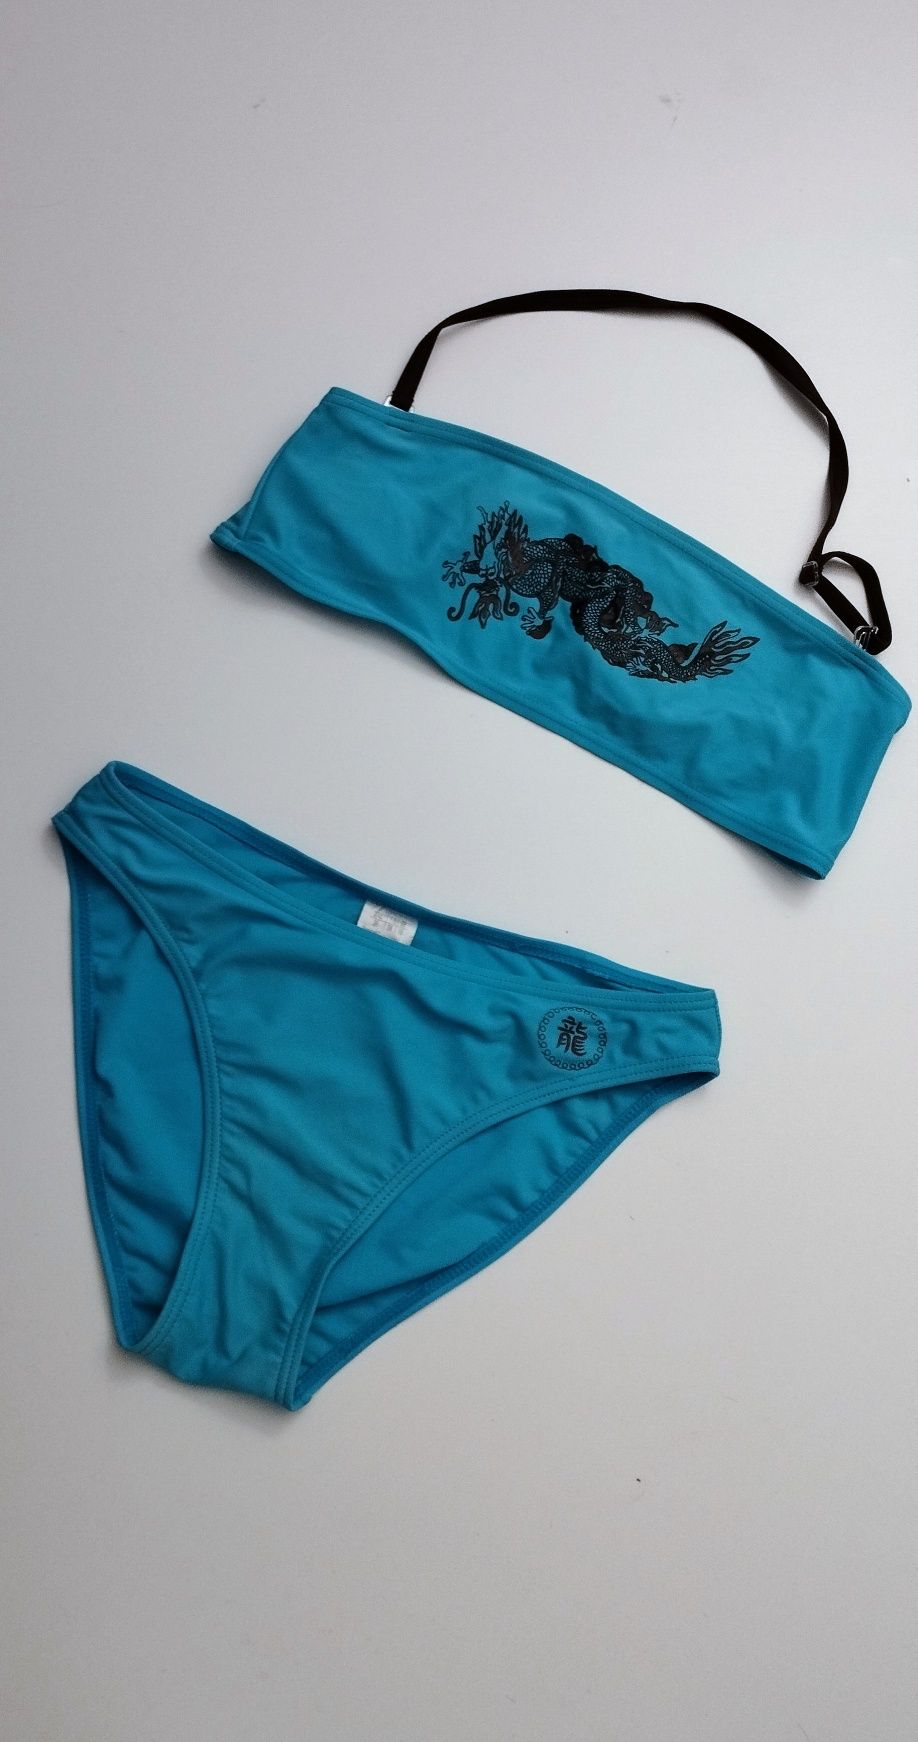 Strój kąpielowy dwuczęściowy, kostium niebieski SMOK rozmiar S